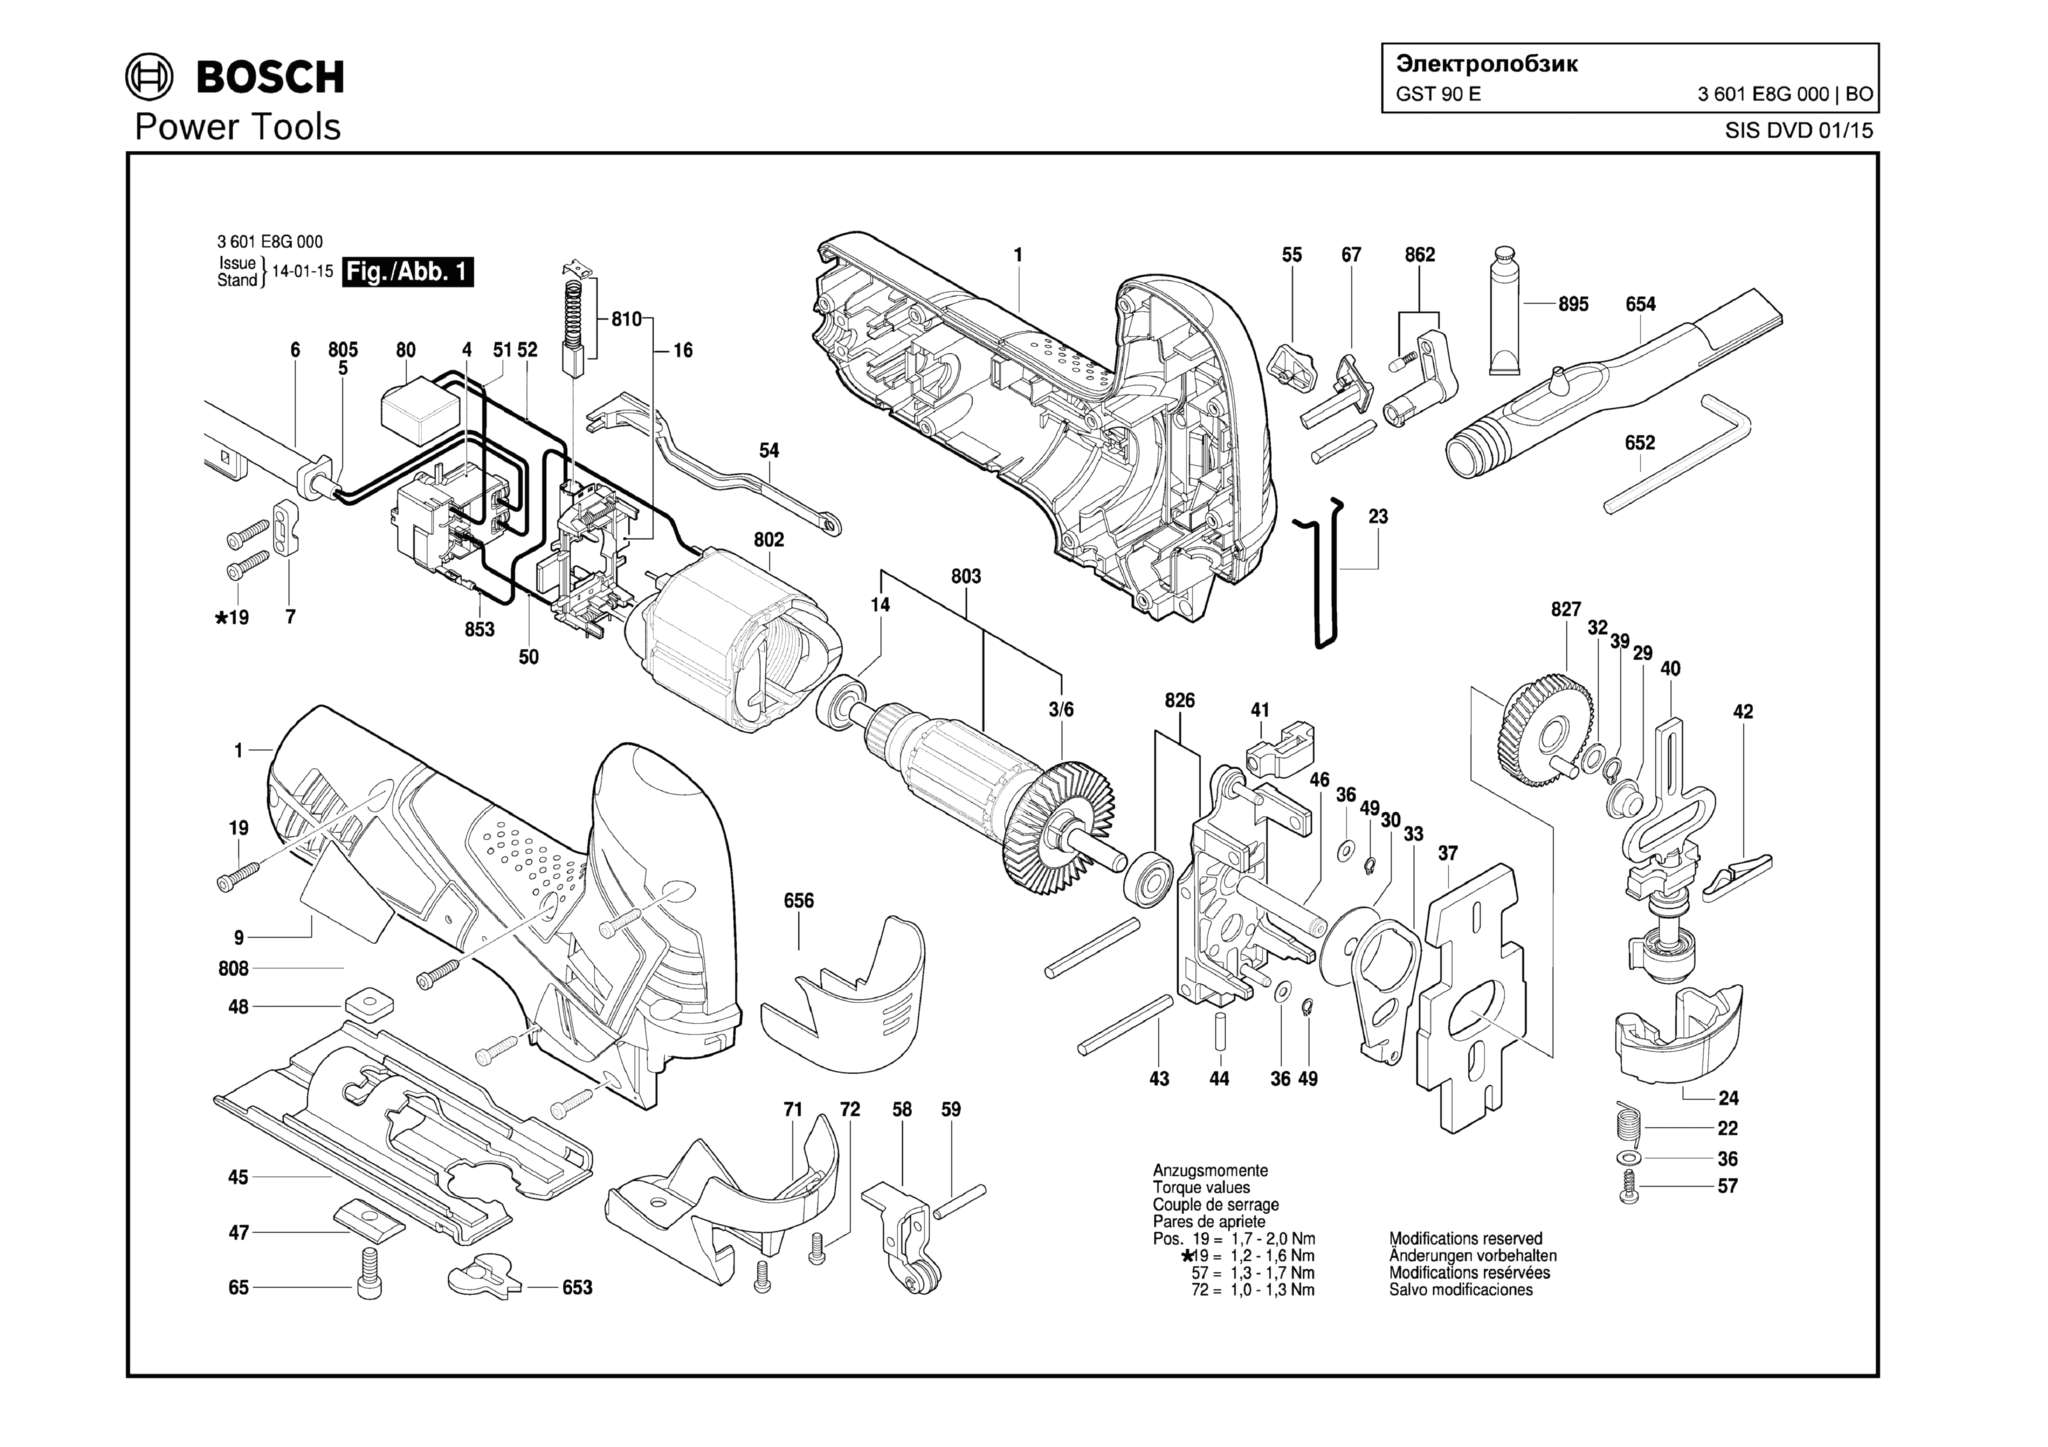 Запчасти, схема и деталировка Bosch GST 90 E (ТИП 3601E8G000)